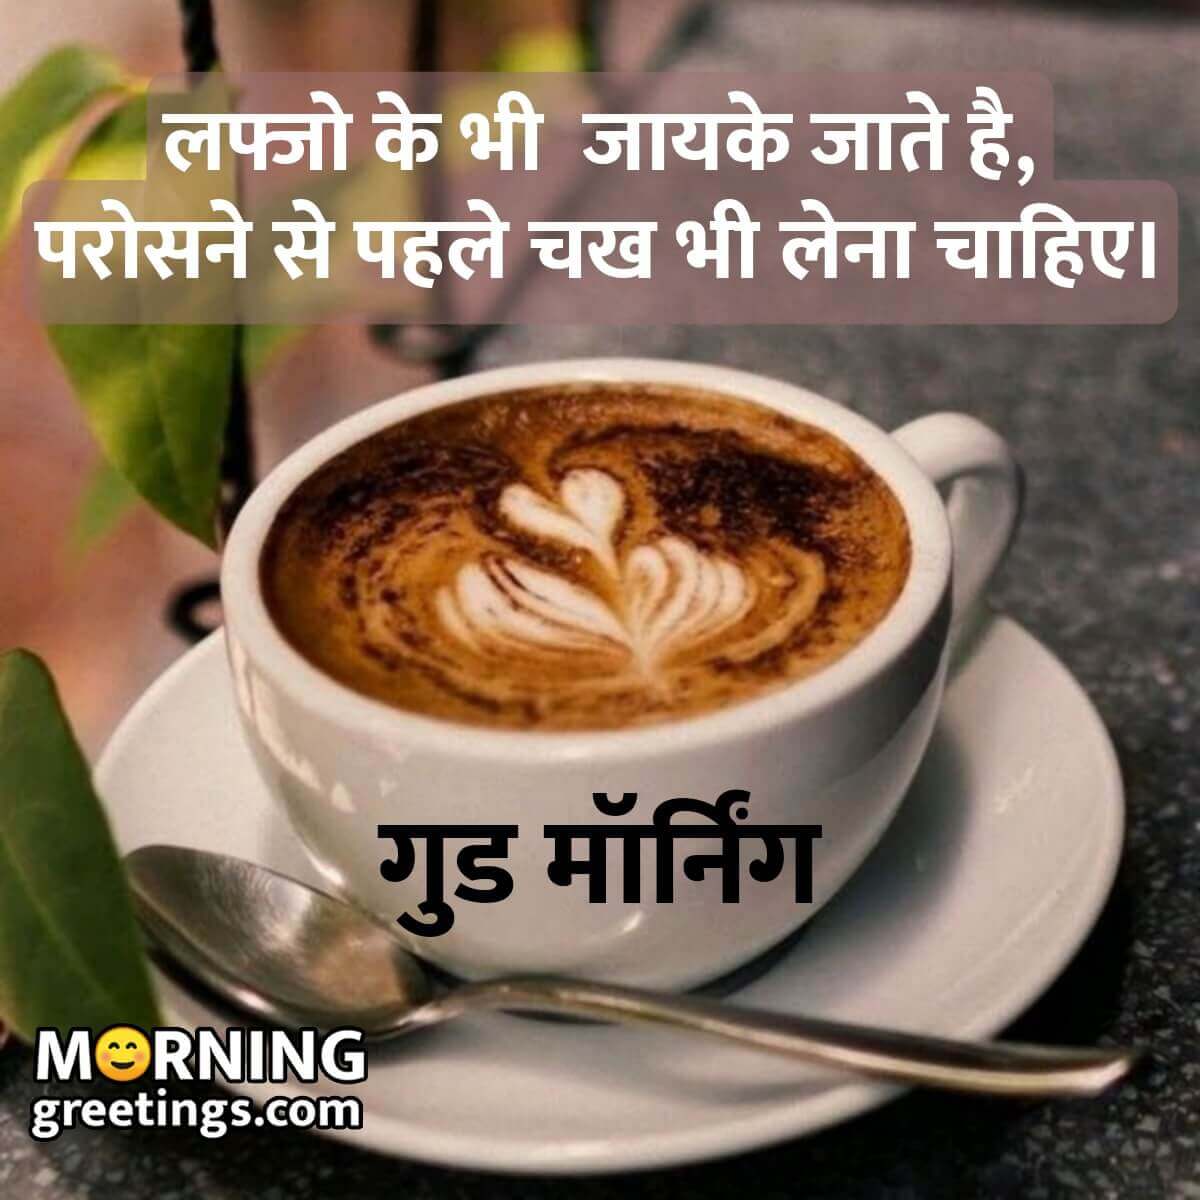 Good Morning Status Image In Hindi